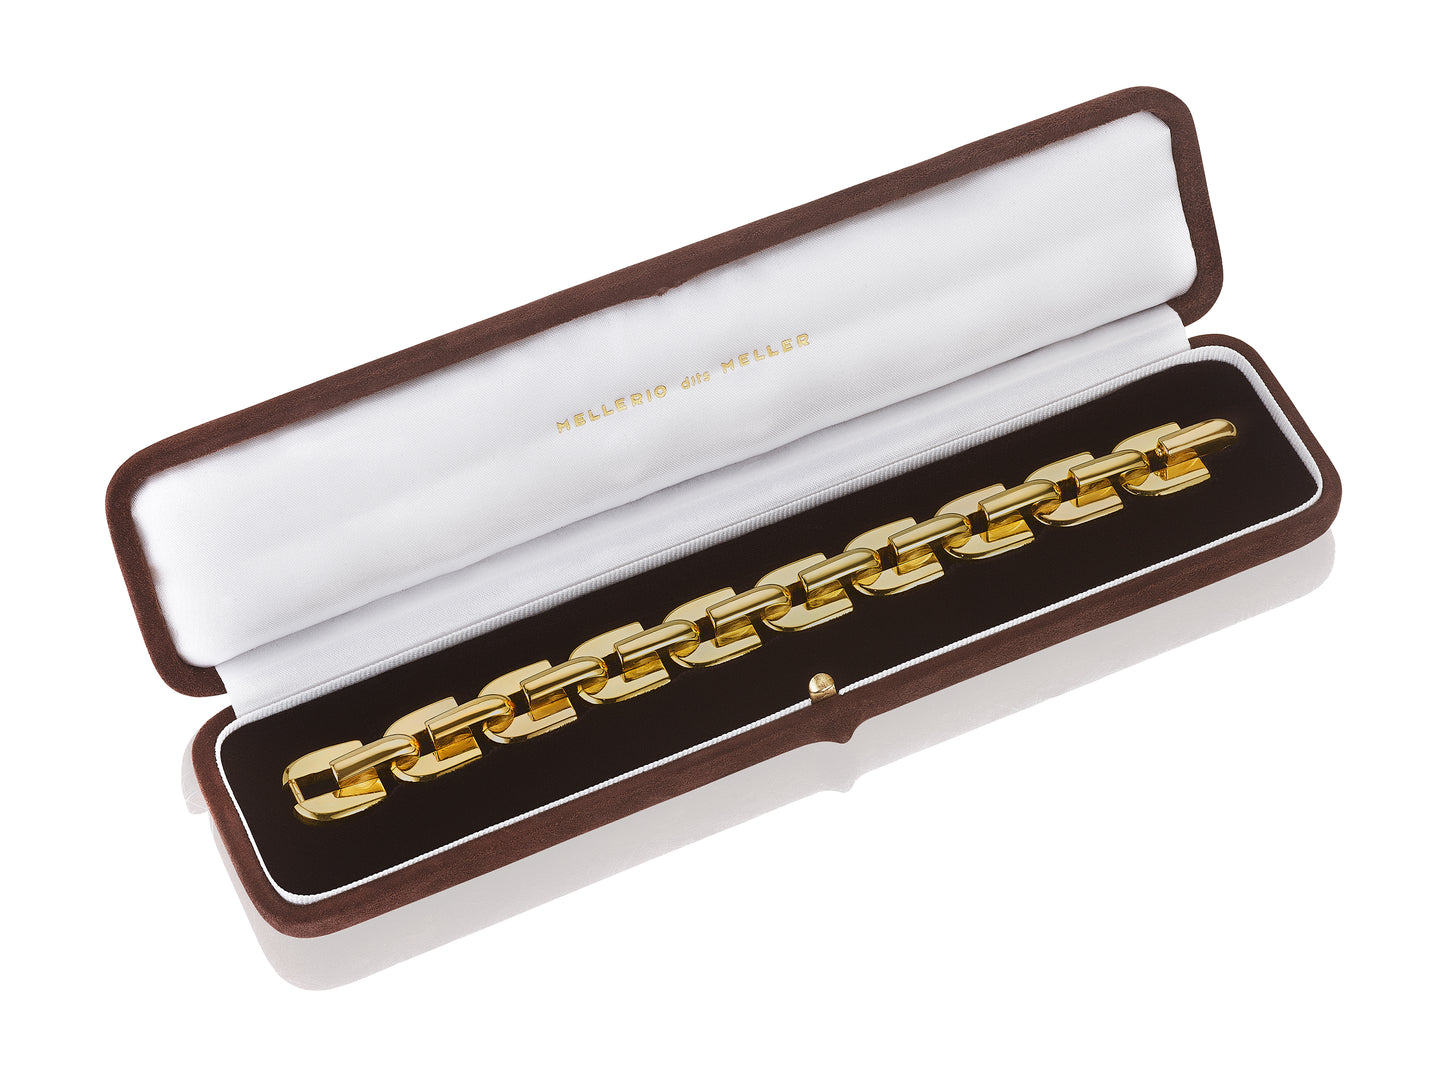 Retro Gold Tank Bracelet by Mellerio dits Meller, Paris, circa 1950, Manufactured by Jacques Lenfant for Georges Lenfant, Paris